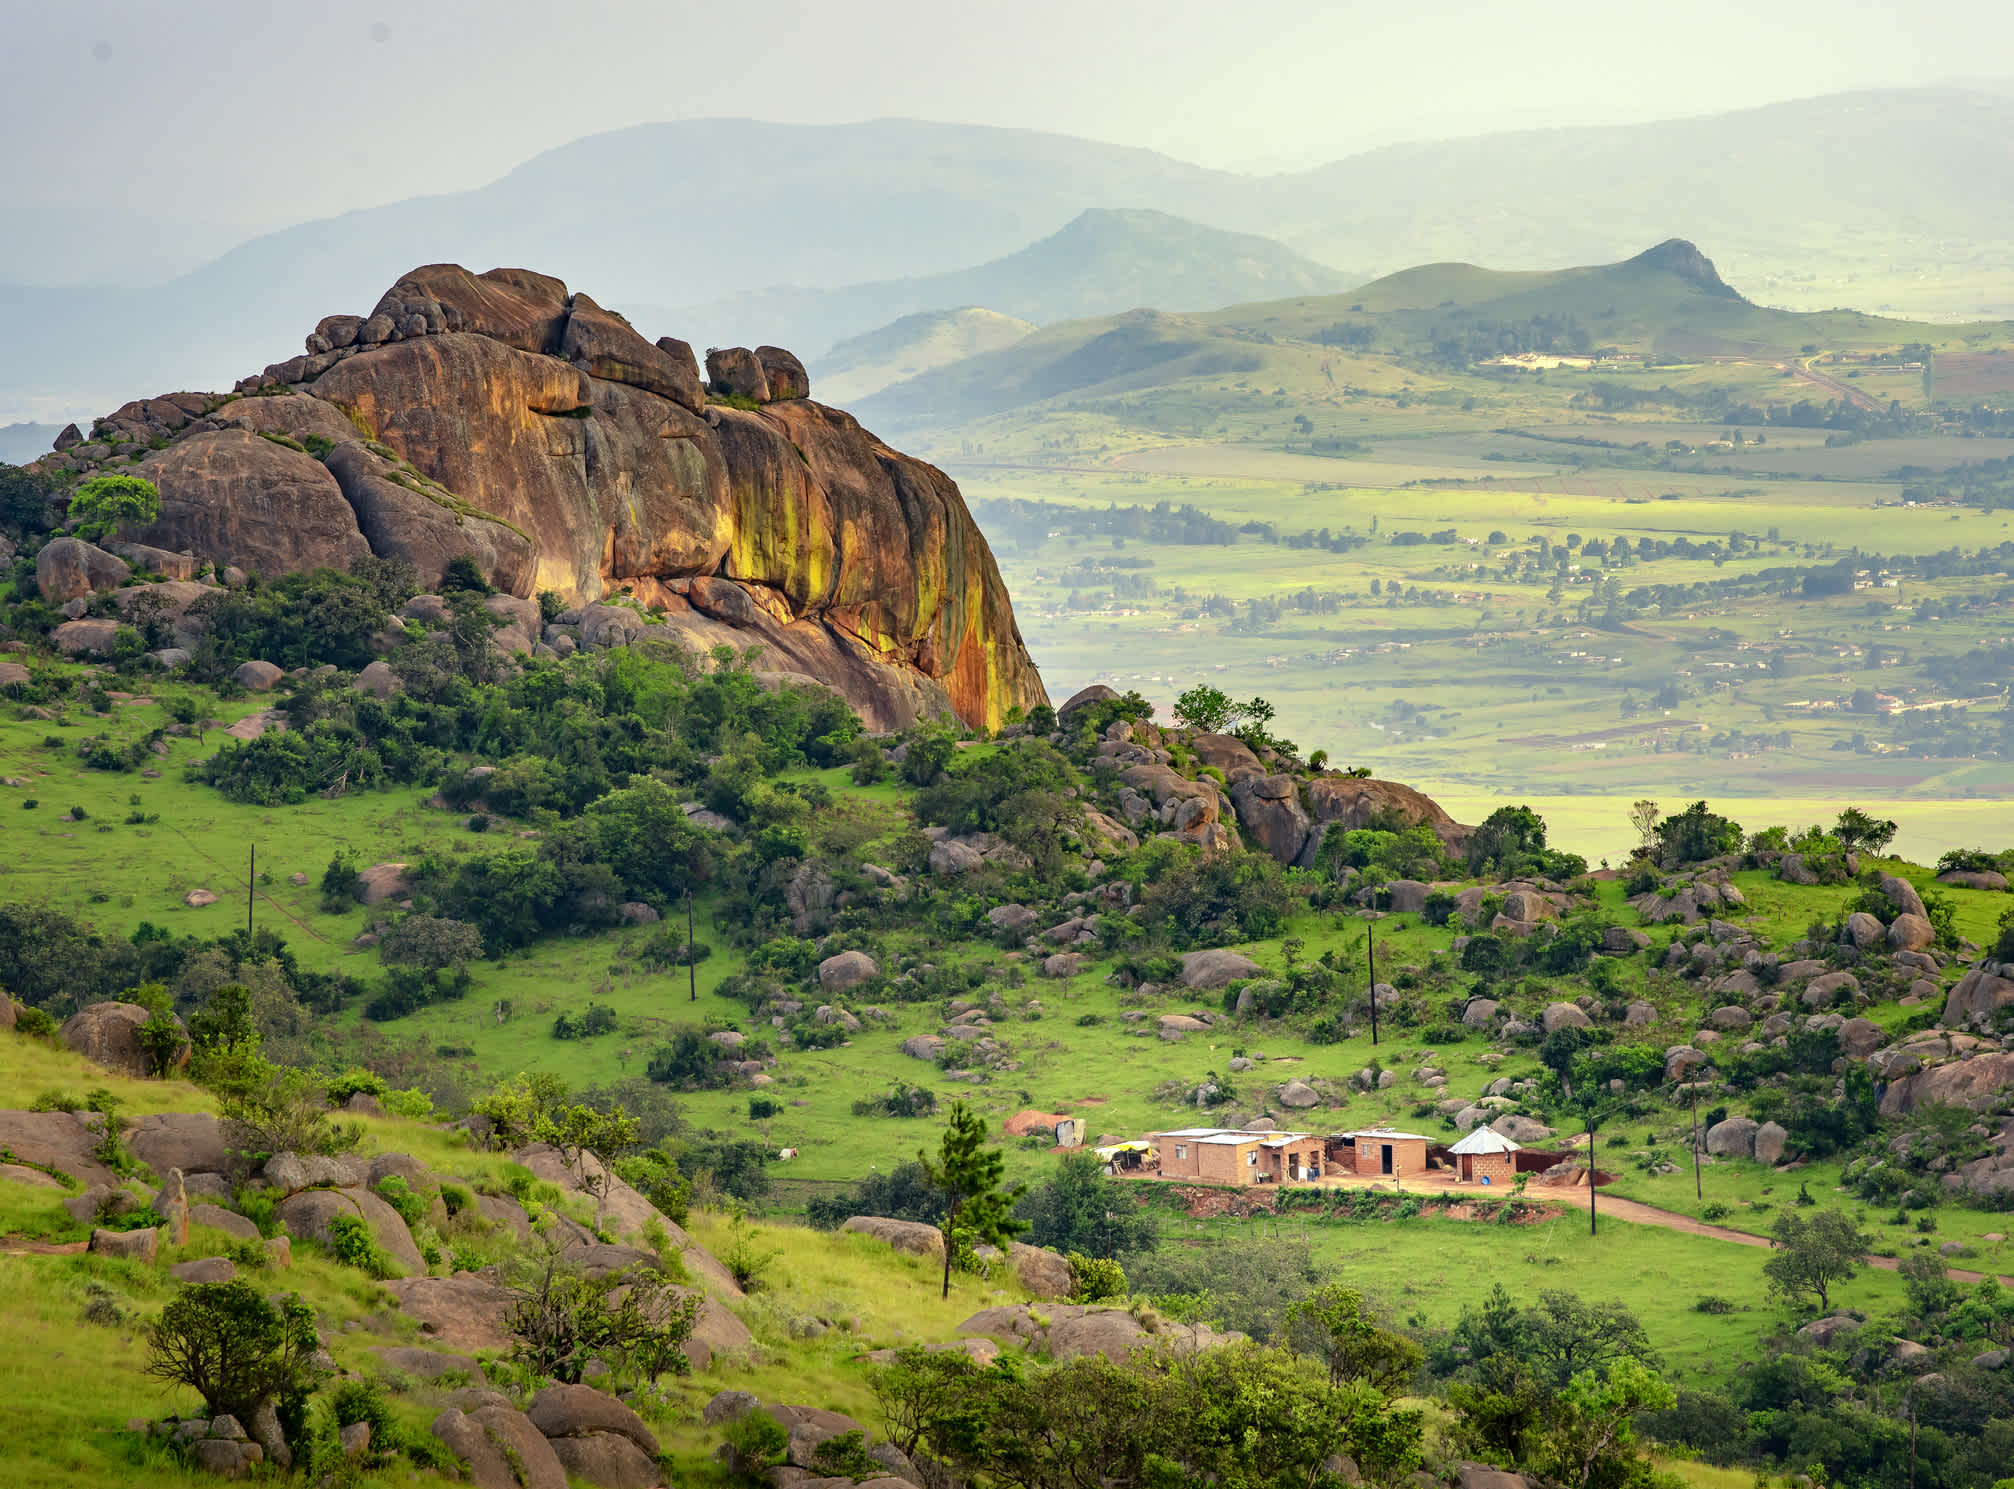 Explorez le pays singulier d'eSwatini anciennement appelé Swaziland pendant vos vacances en Afrique du Sud, pour un séjour hors des sentiers battus.